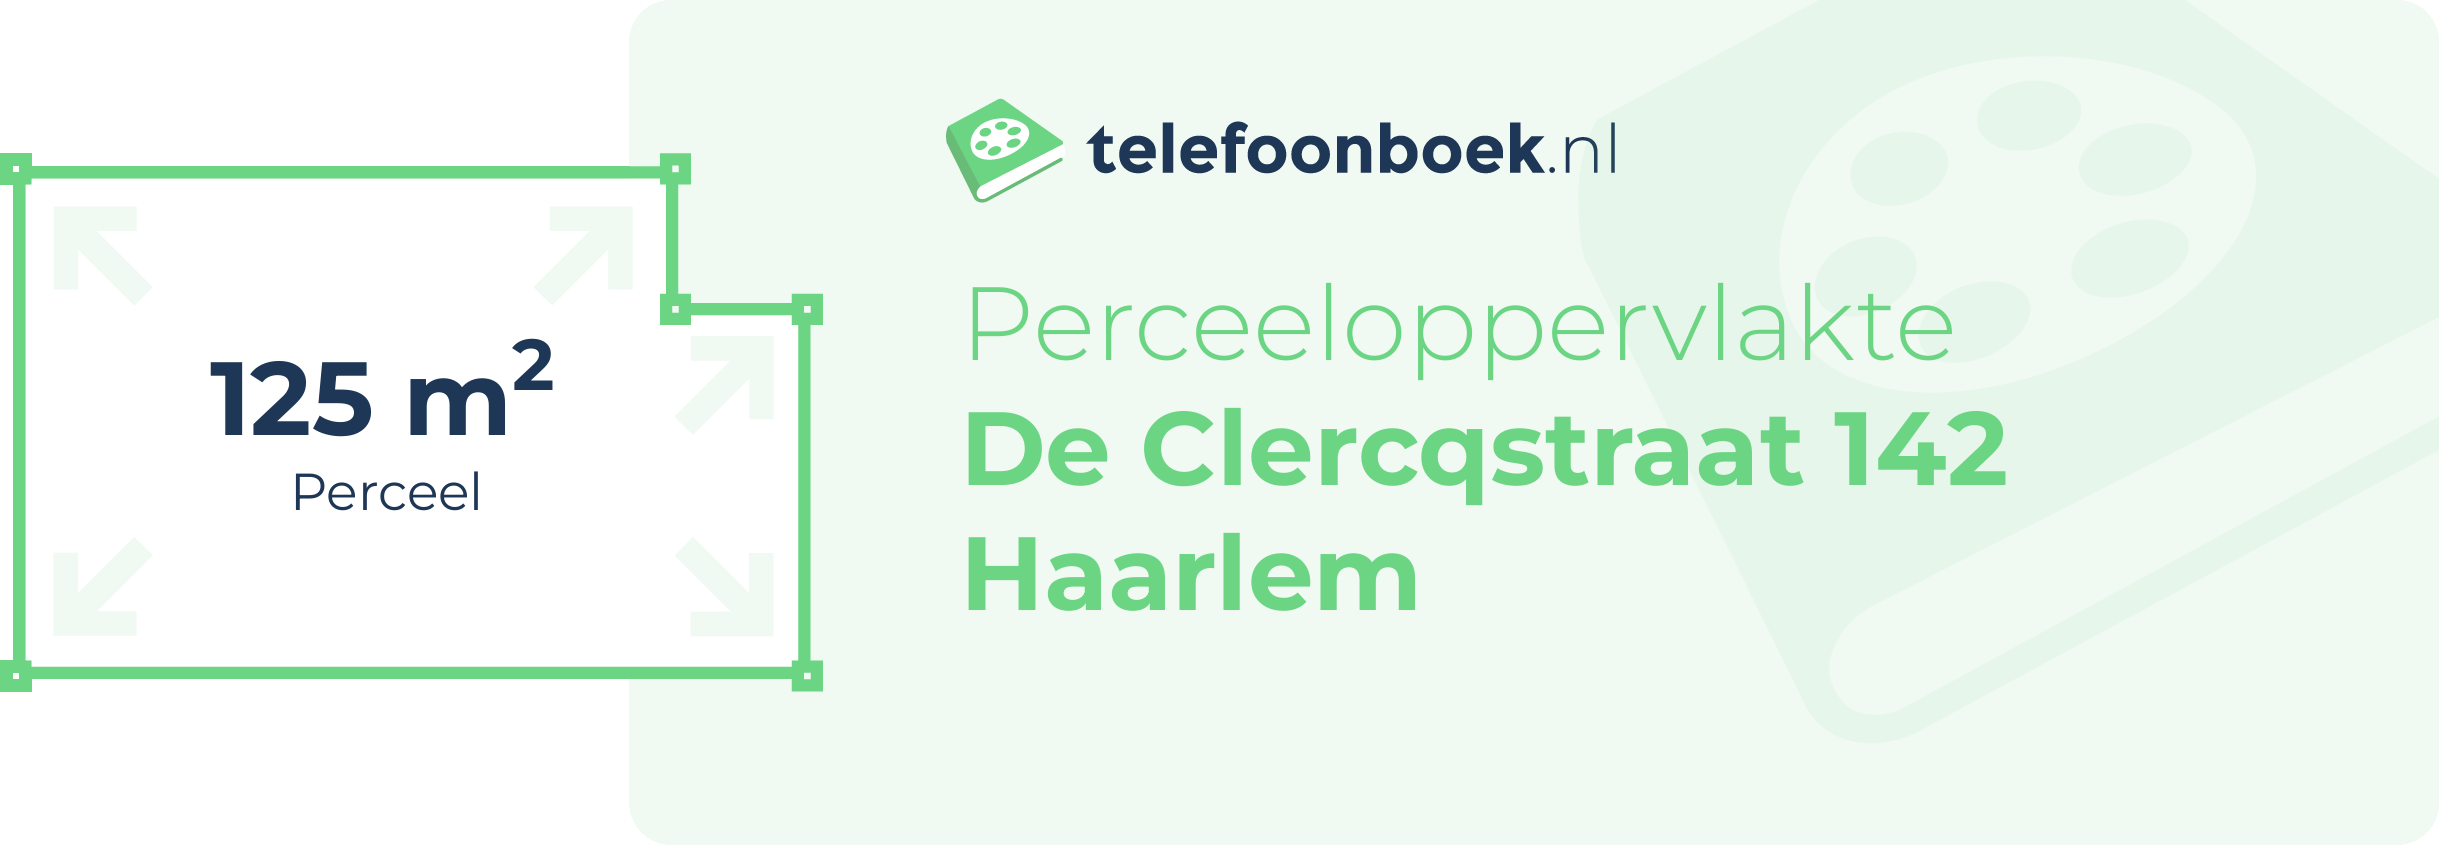 Perceeloppervlakte De Clercqstraat 142 Haarlem